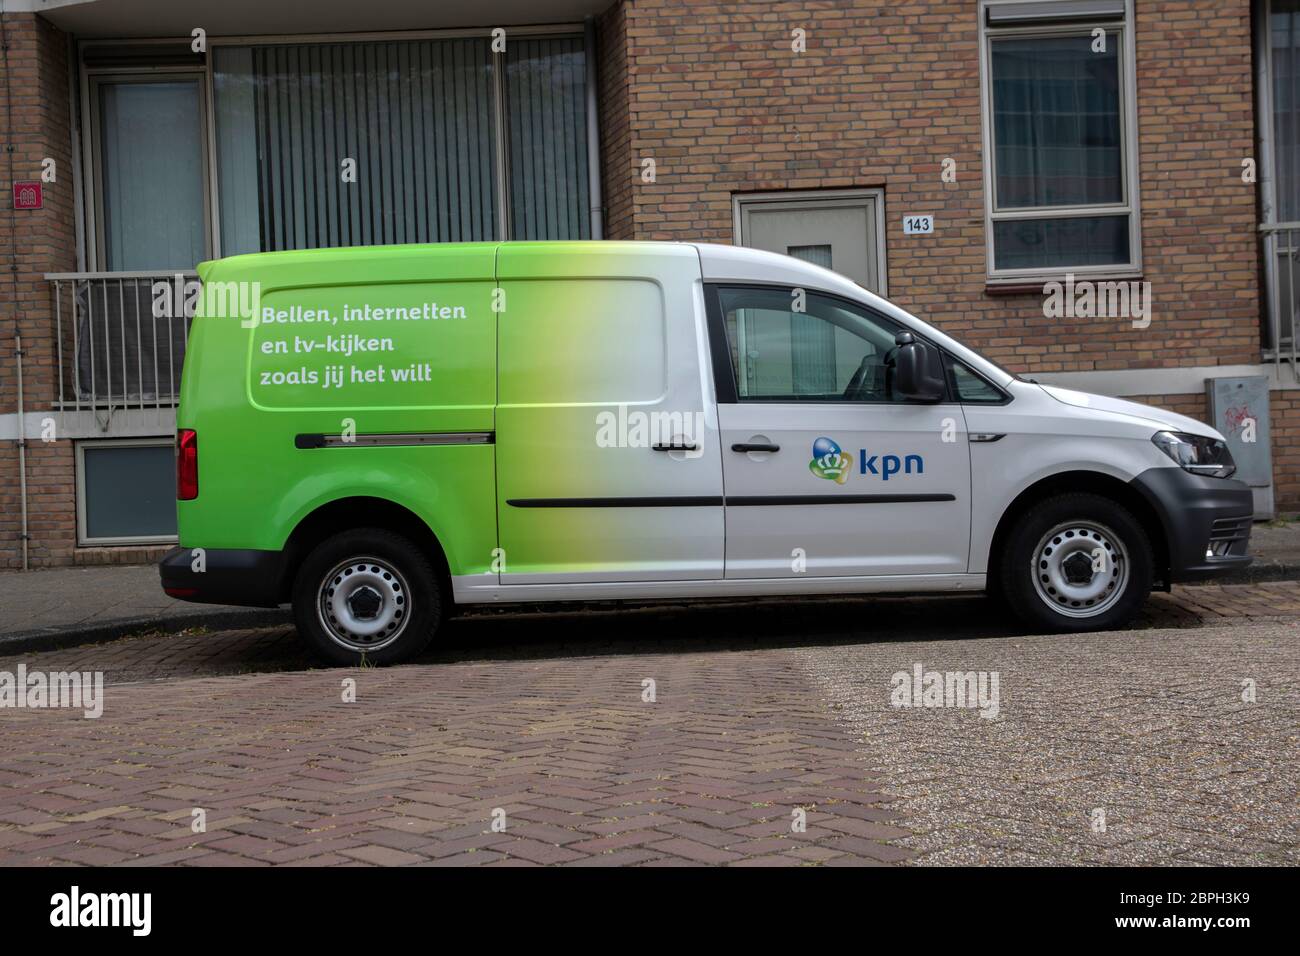 KPN Company car à Amsterdam Pays-Bas 2020 Banque D'Images